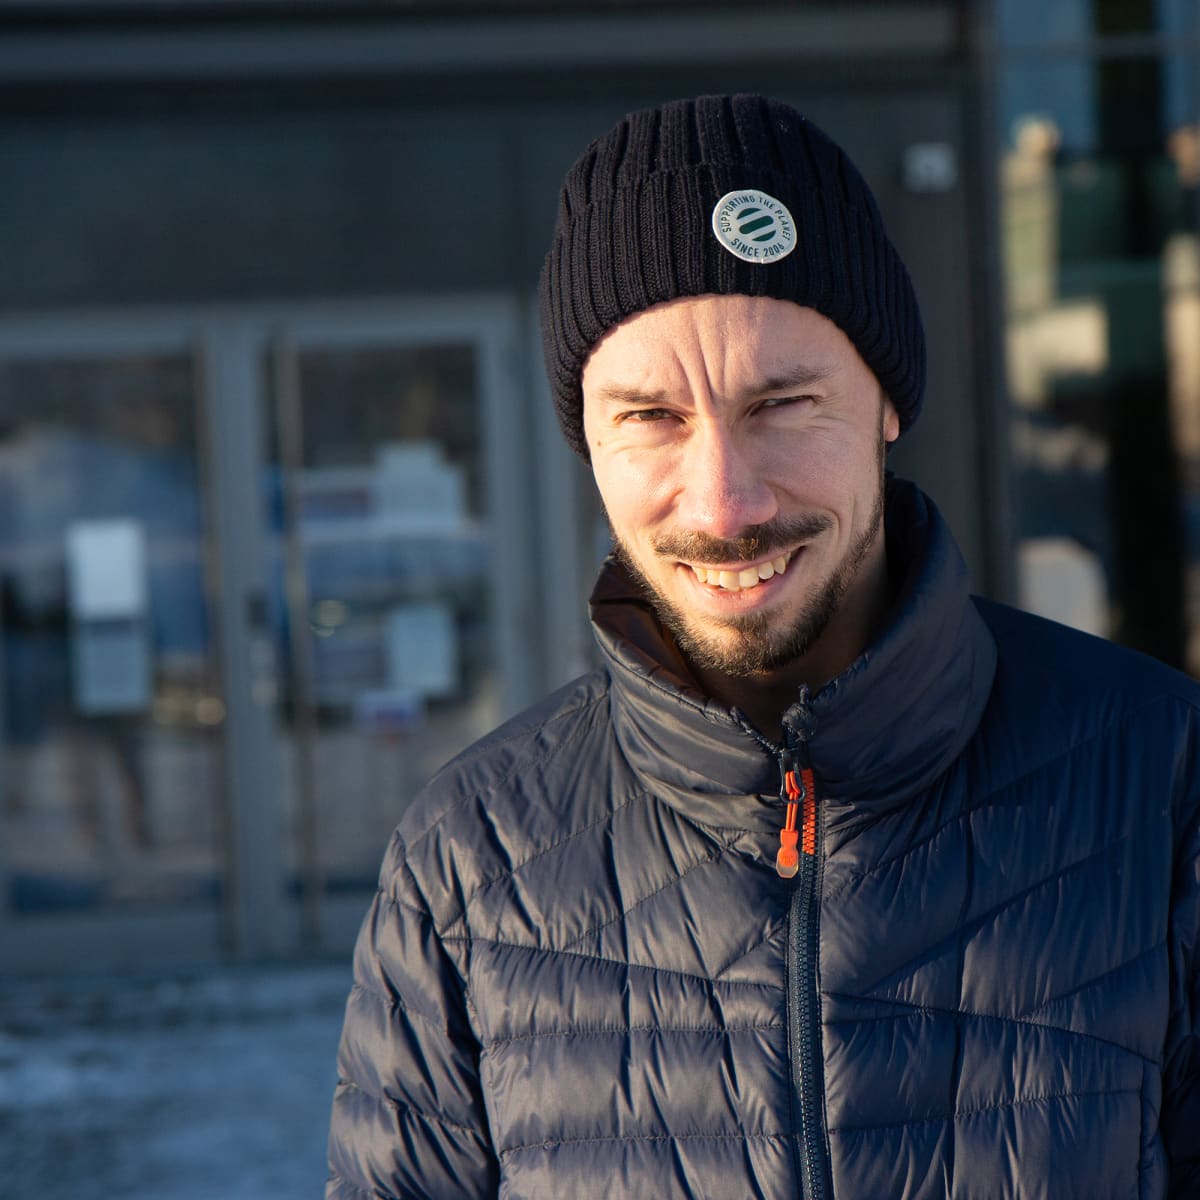 Tampereen yliopistollisen sairaalan geriatrian professori, ylilääkäri Esa Jämsen hymyilee henkilökuvassa.